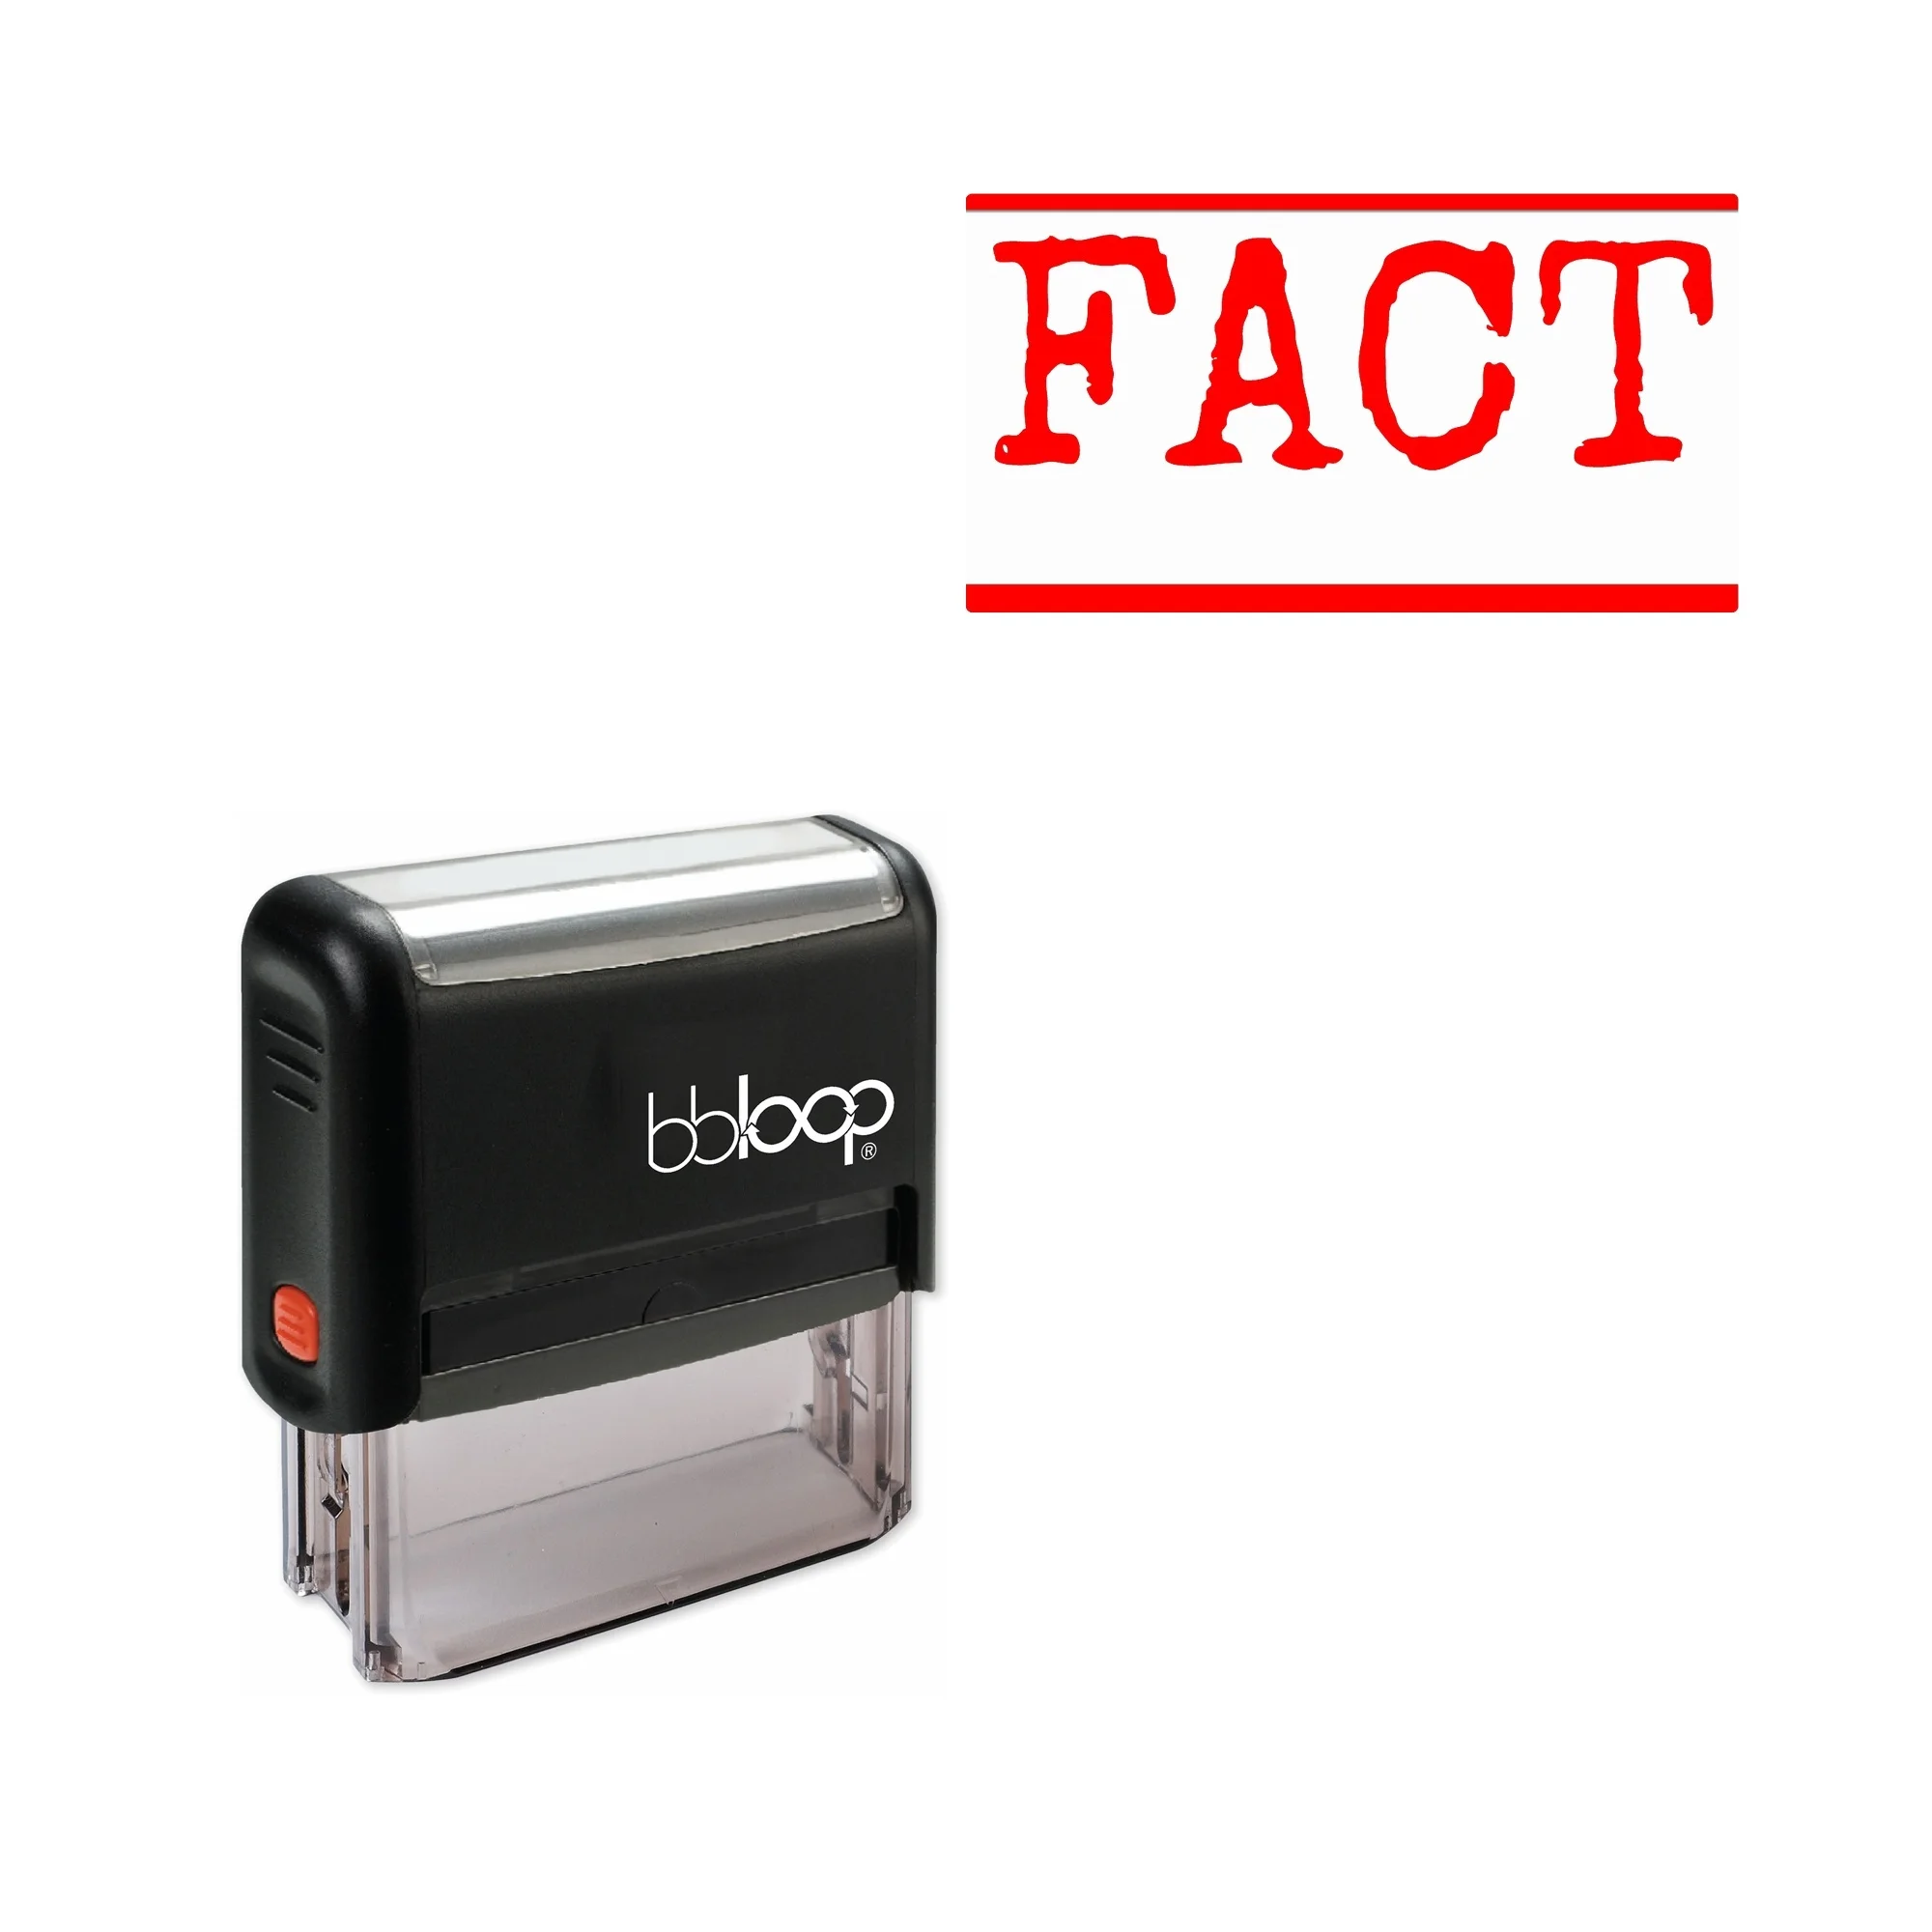 

Bbloop 'FACT' Self-Inking Office Stamp, Rectangular Typewriter Style